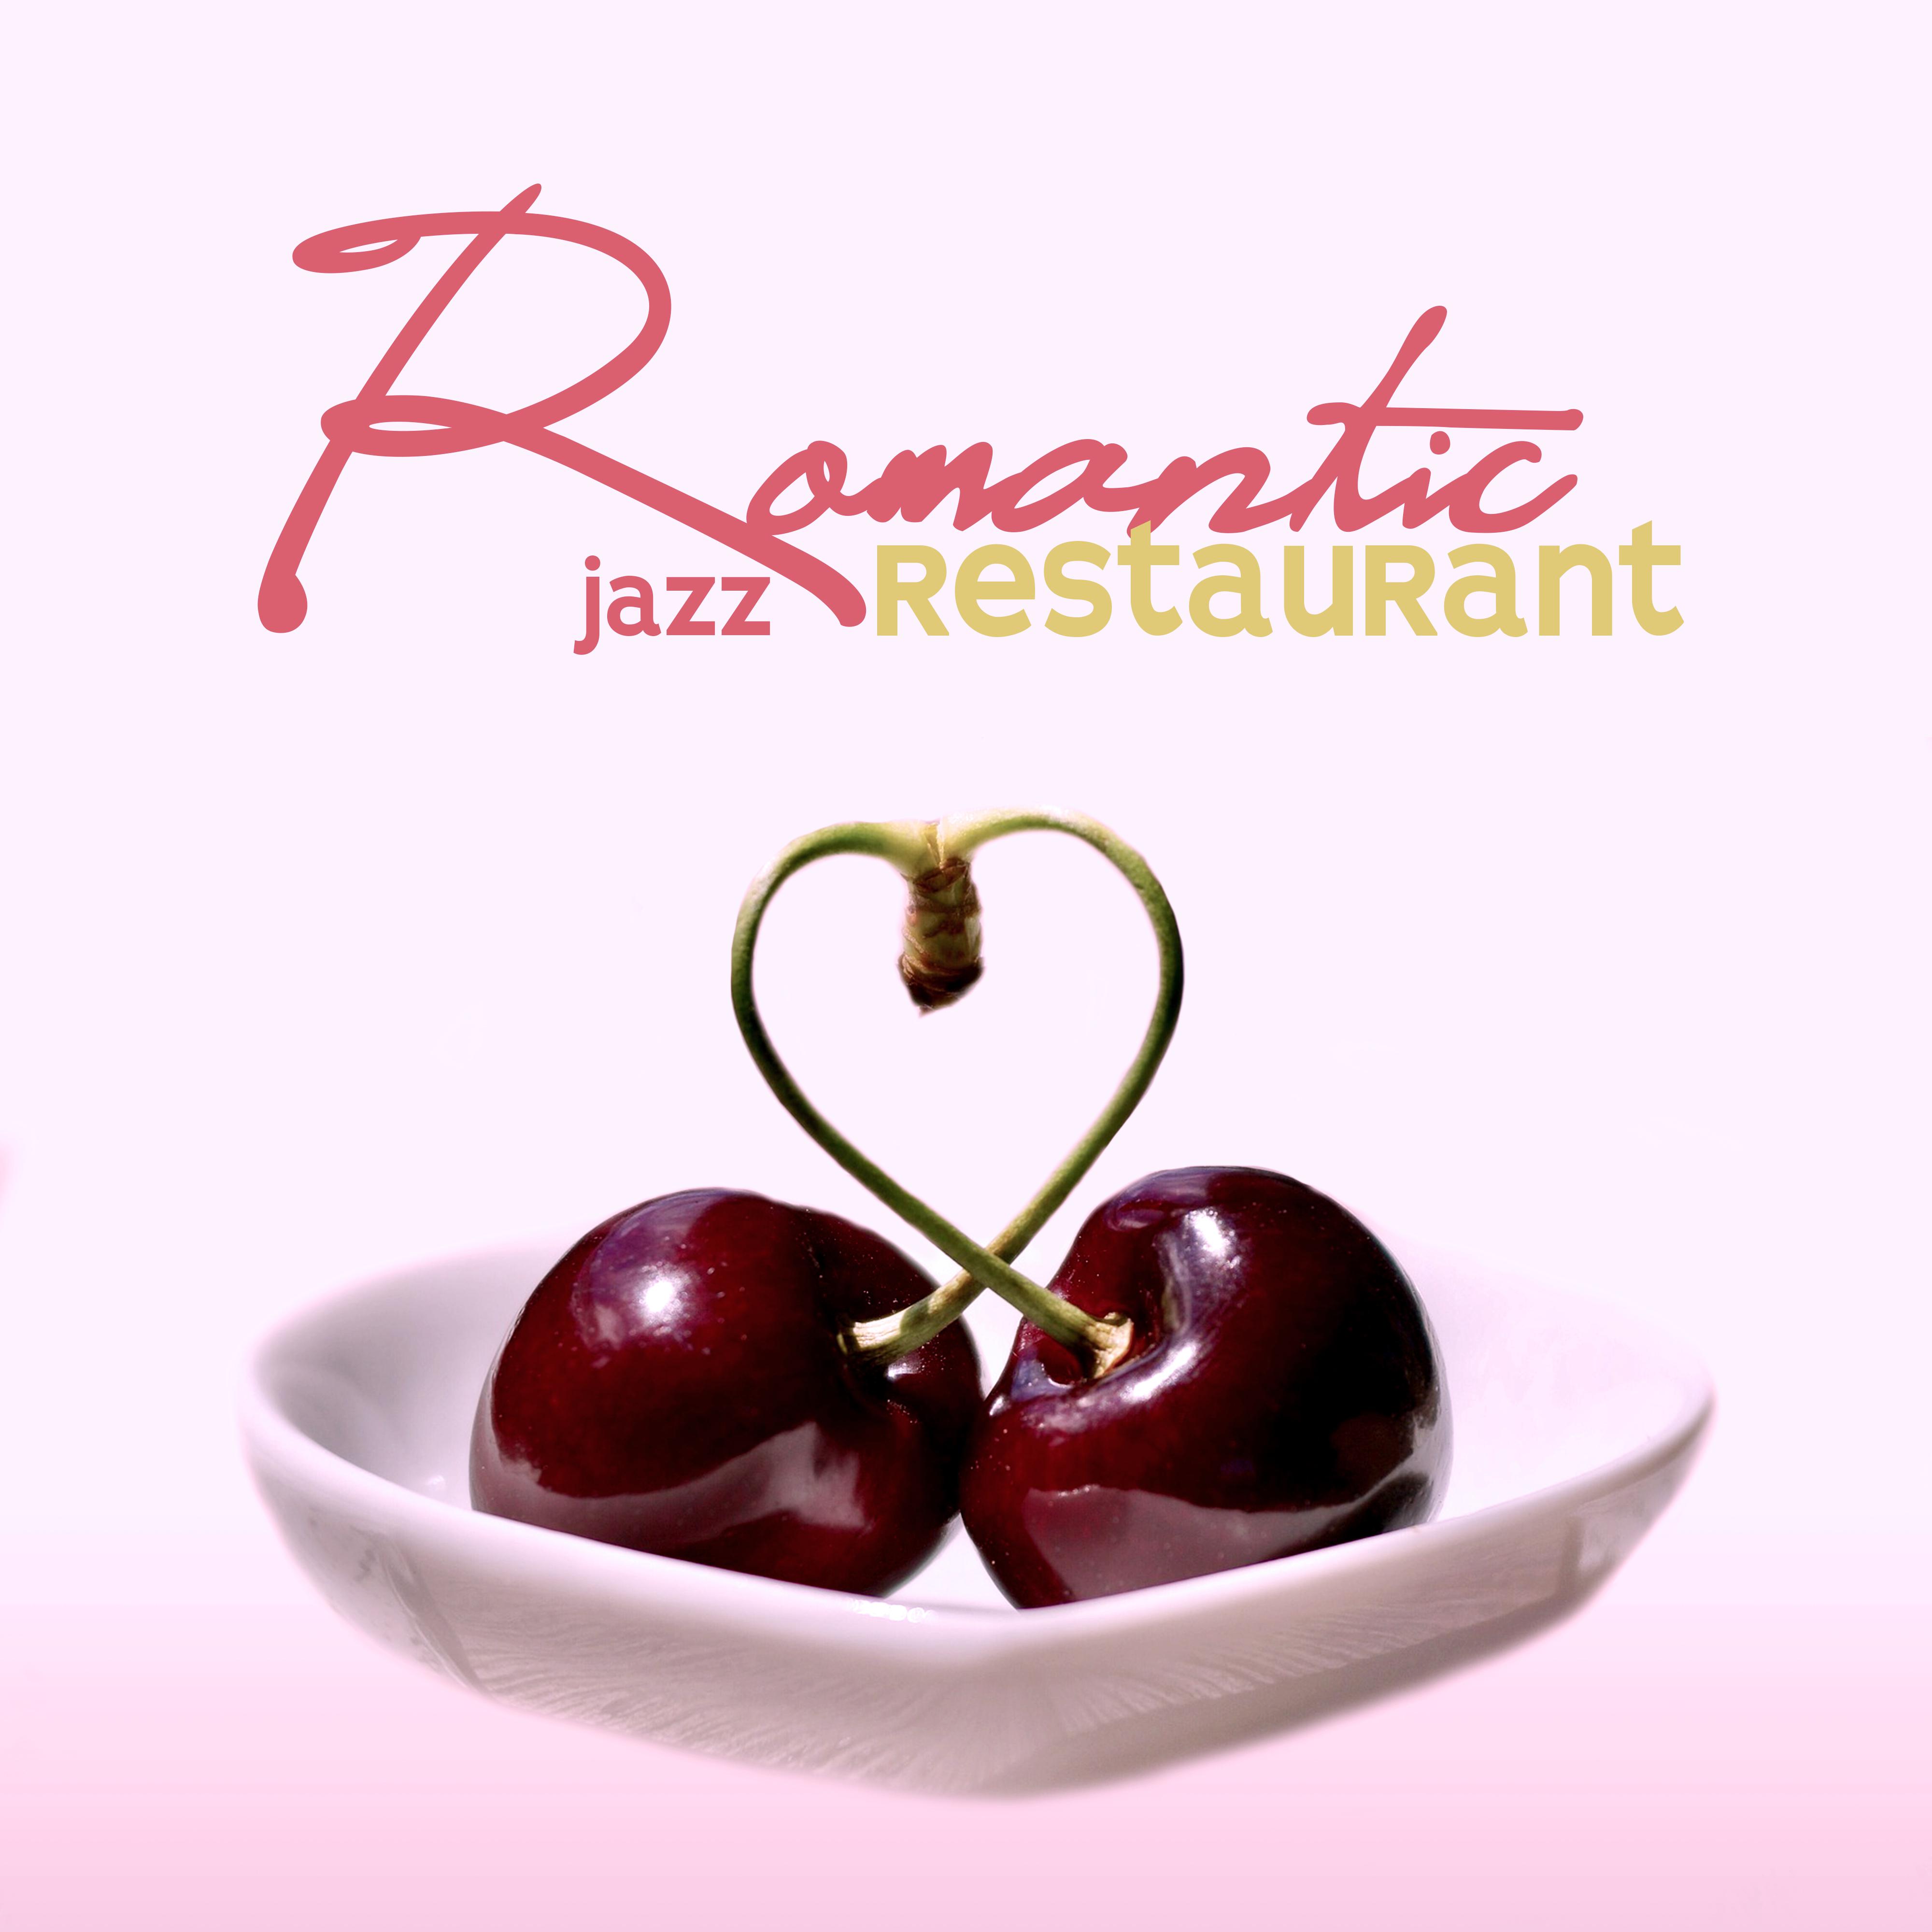 Romantic Restaurant Jazz: Des Compositions Fran aises pour un RendezVous, un D ner Romantique et une Soire e a Deux